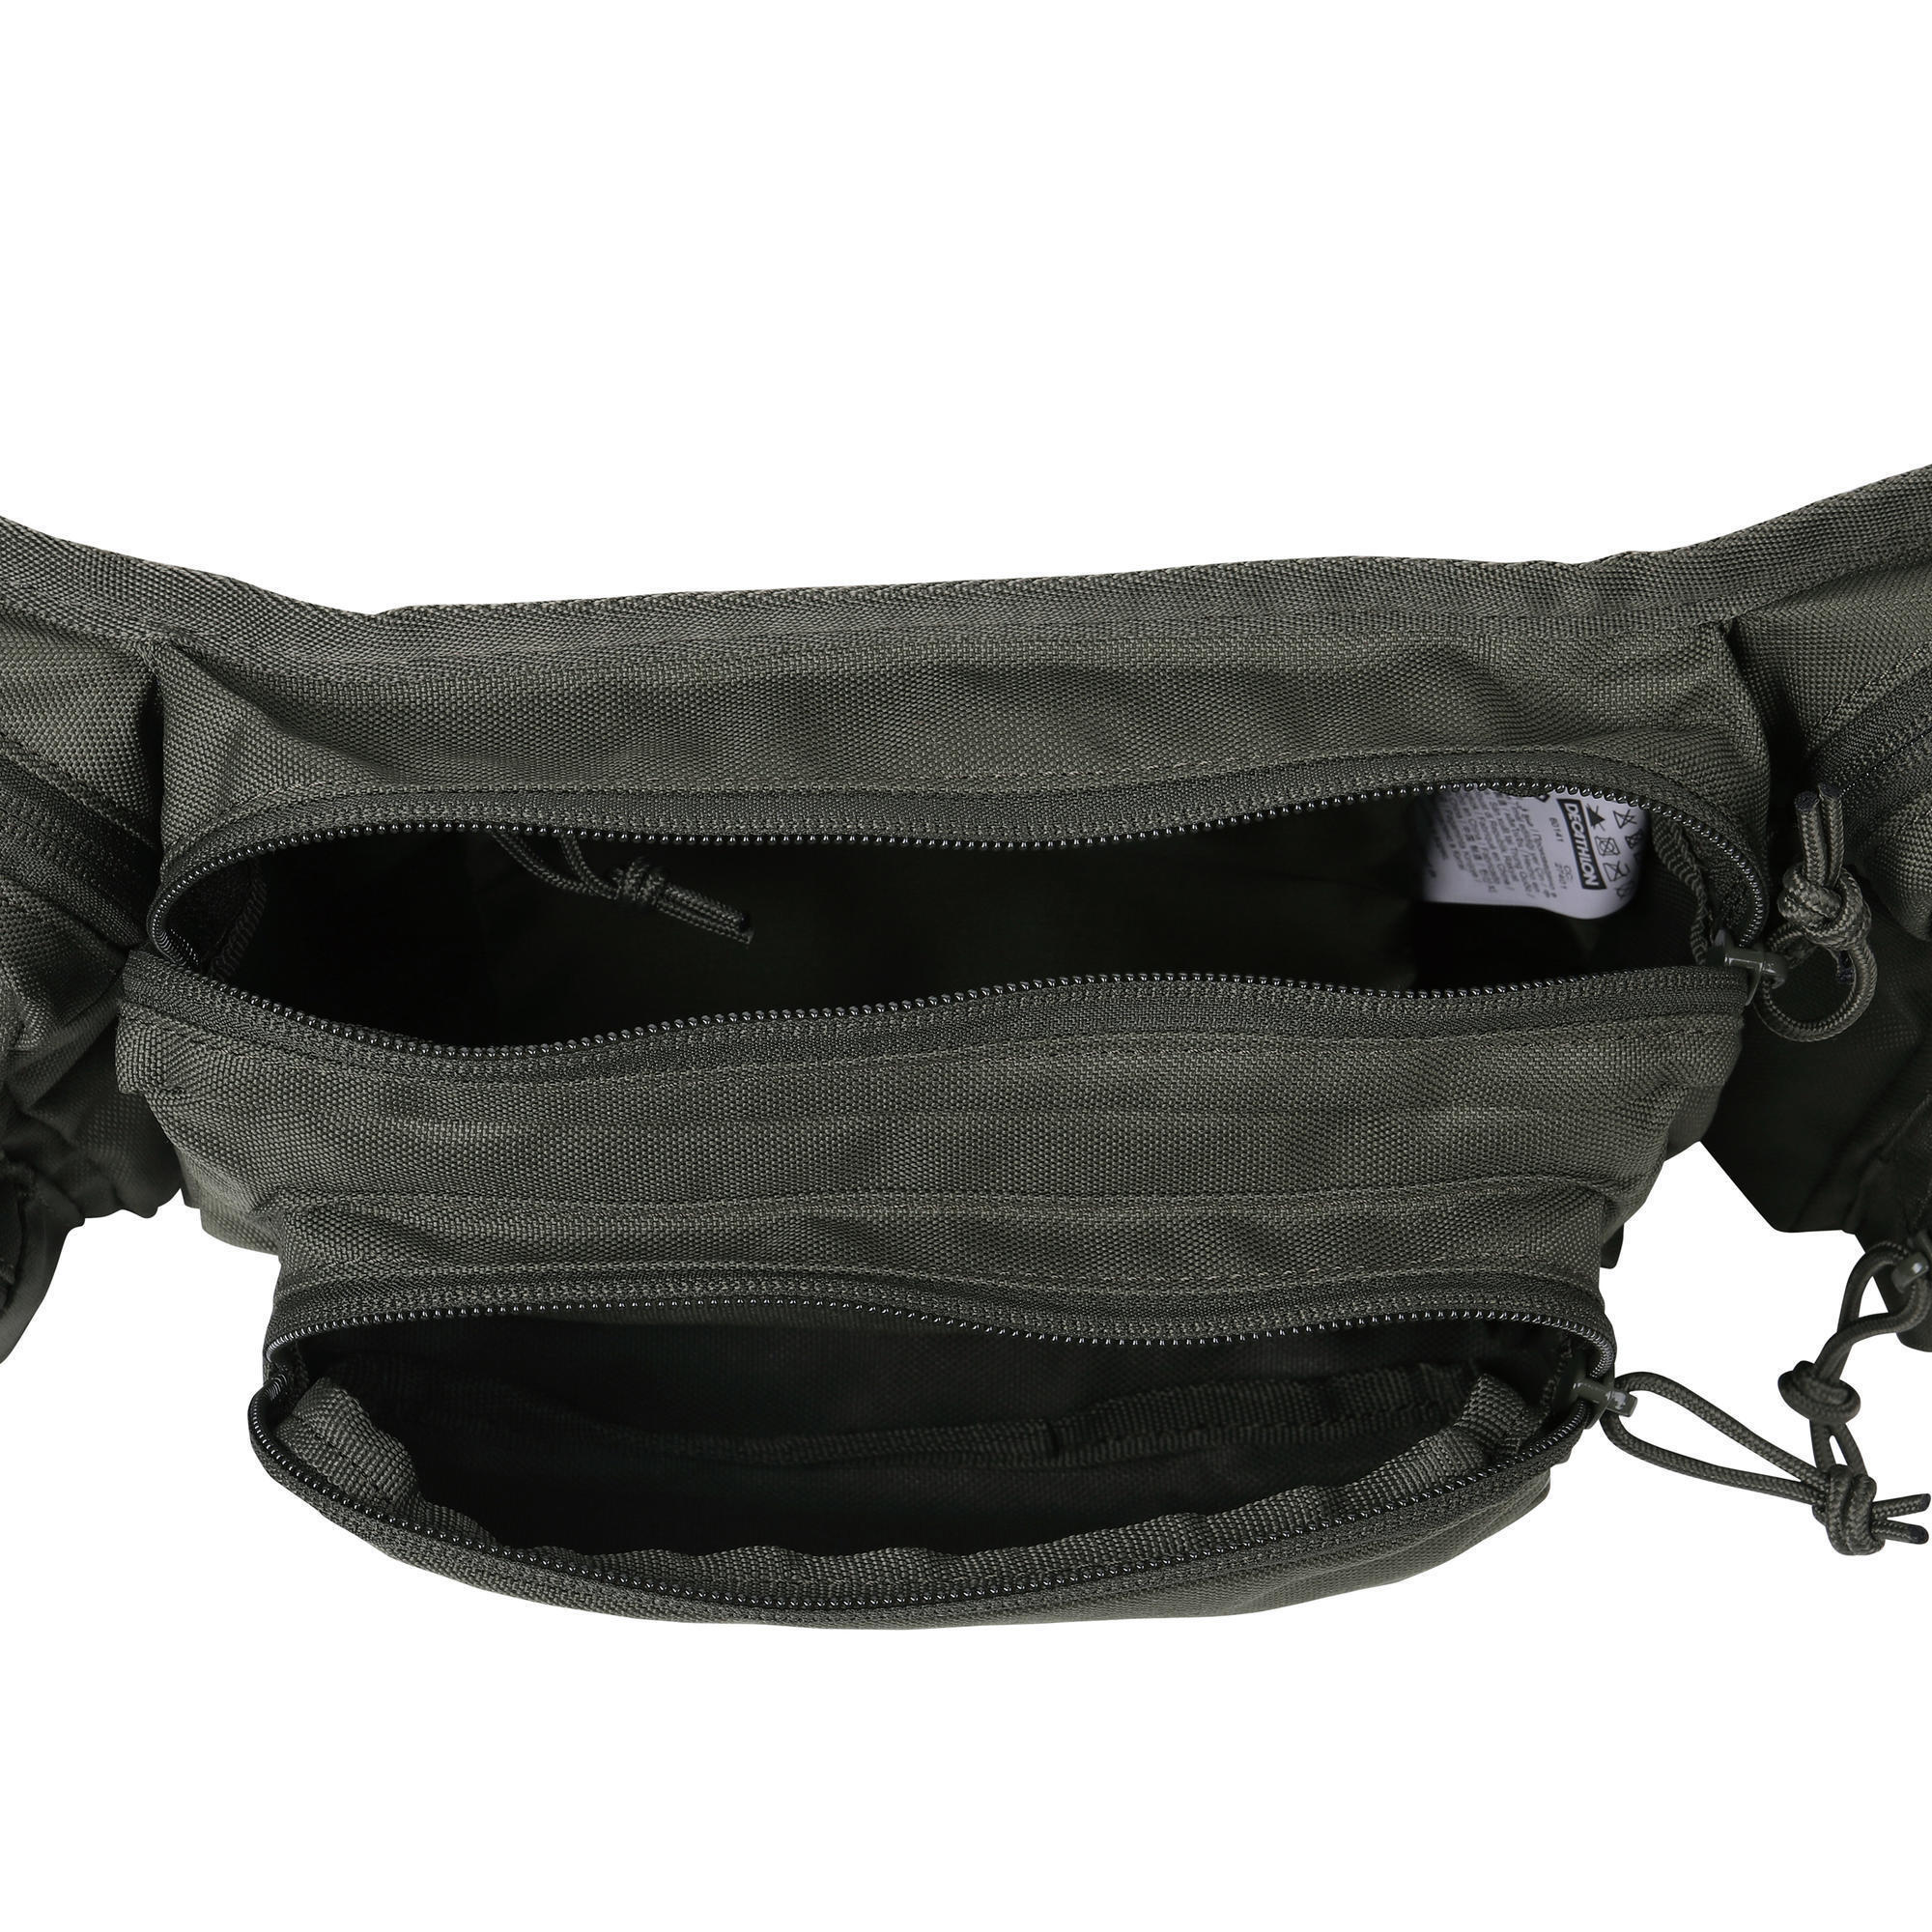 Hunting X-Access Waist Bag 7 Litre - Green - Solognac - Decathlon